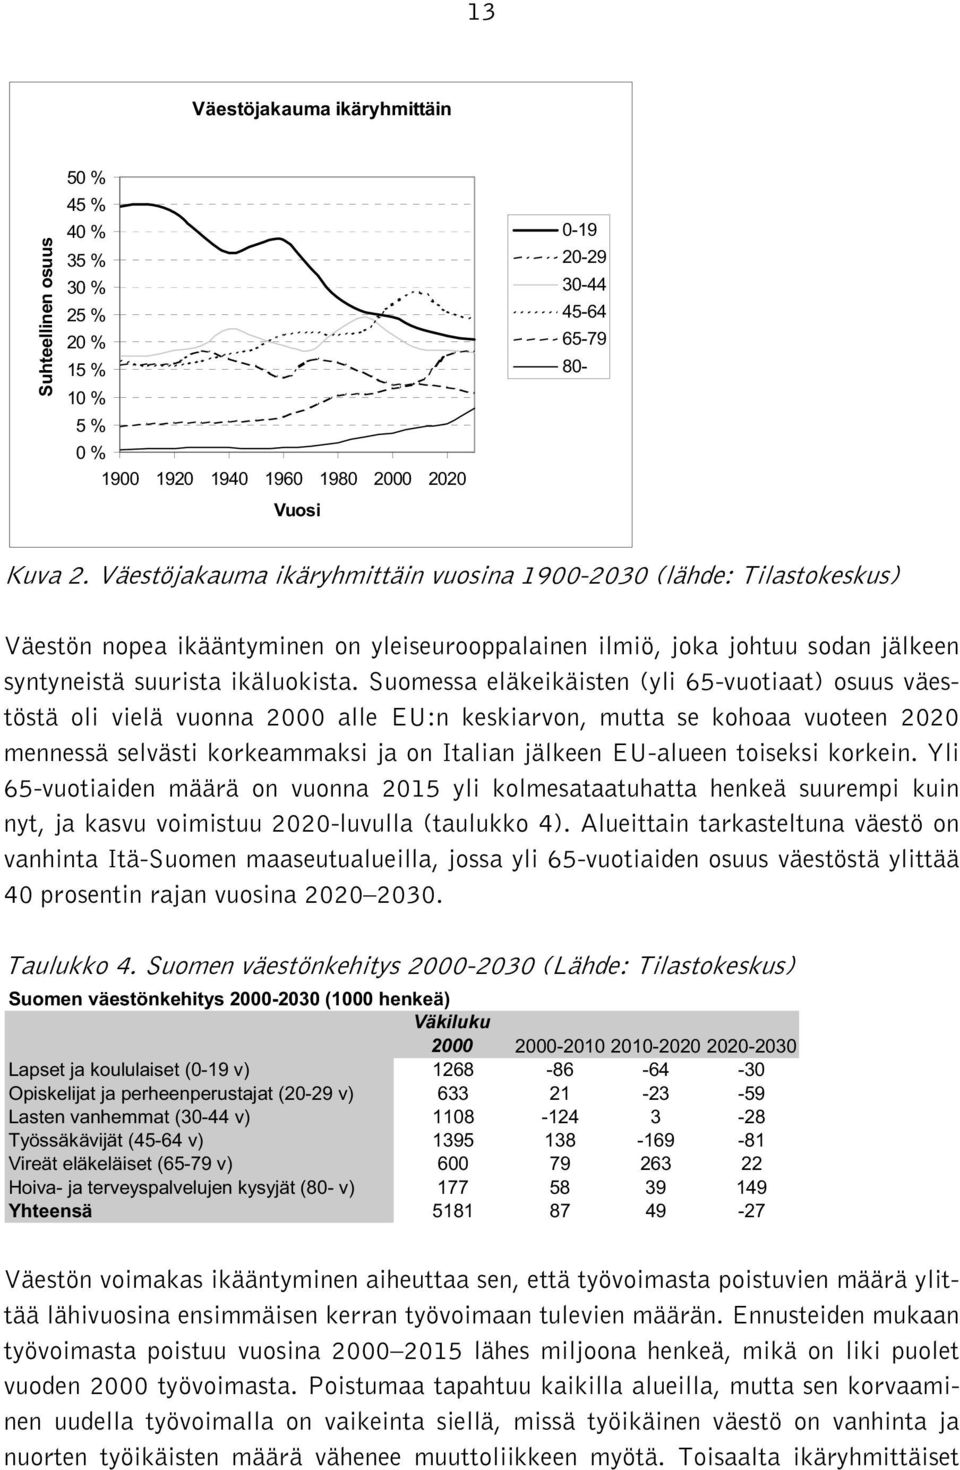 Suomessa eläkeikäisten (yli 65-vuotiaat) osuus väestöstä oli vielä vuonna 2000 alle EU:n keskiarvon, mutta se kohoaa vuoteen 2020 mennessä selvästi korkeammaksi ja on Italian jälkeen EU-alueen